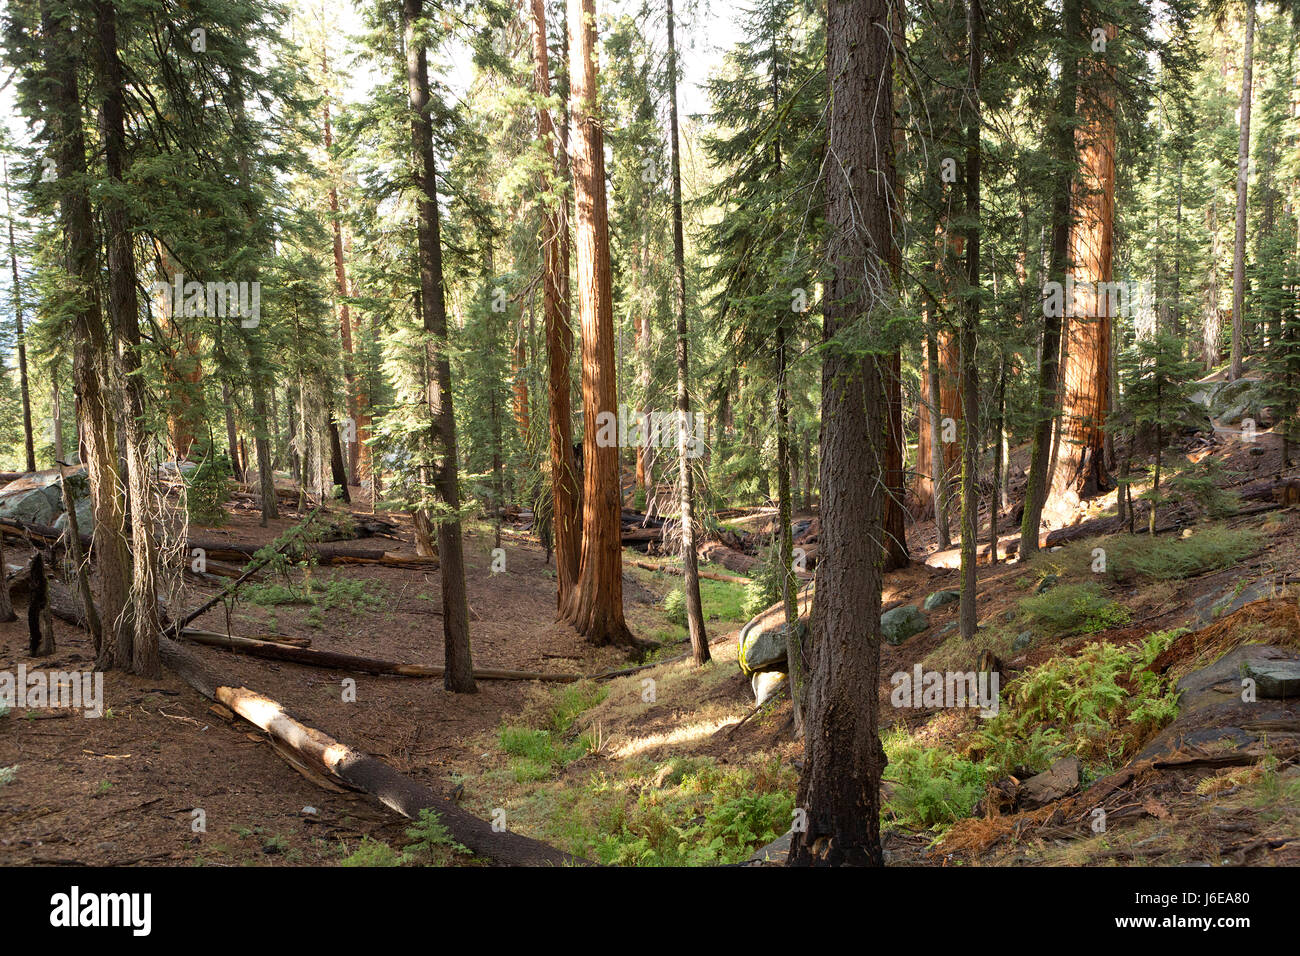 Giant sequoia trees inn the Sequoia National Park, California. Stock Photo